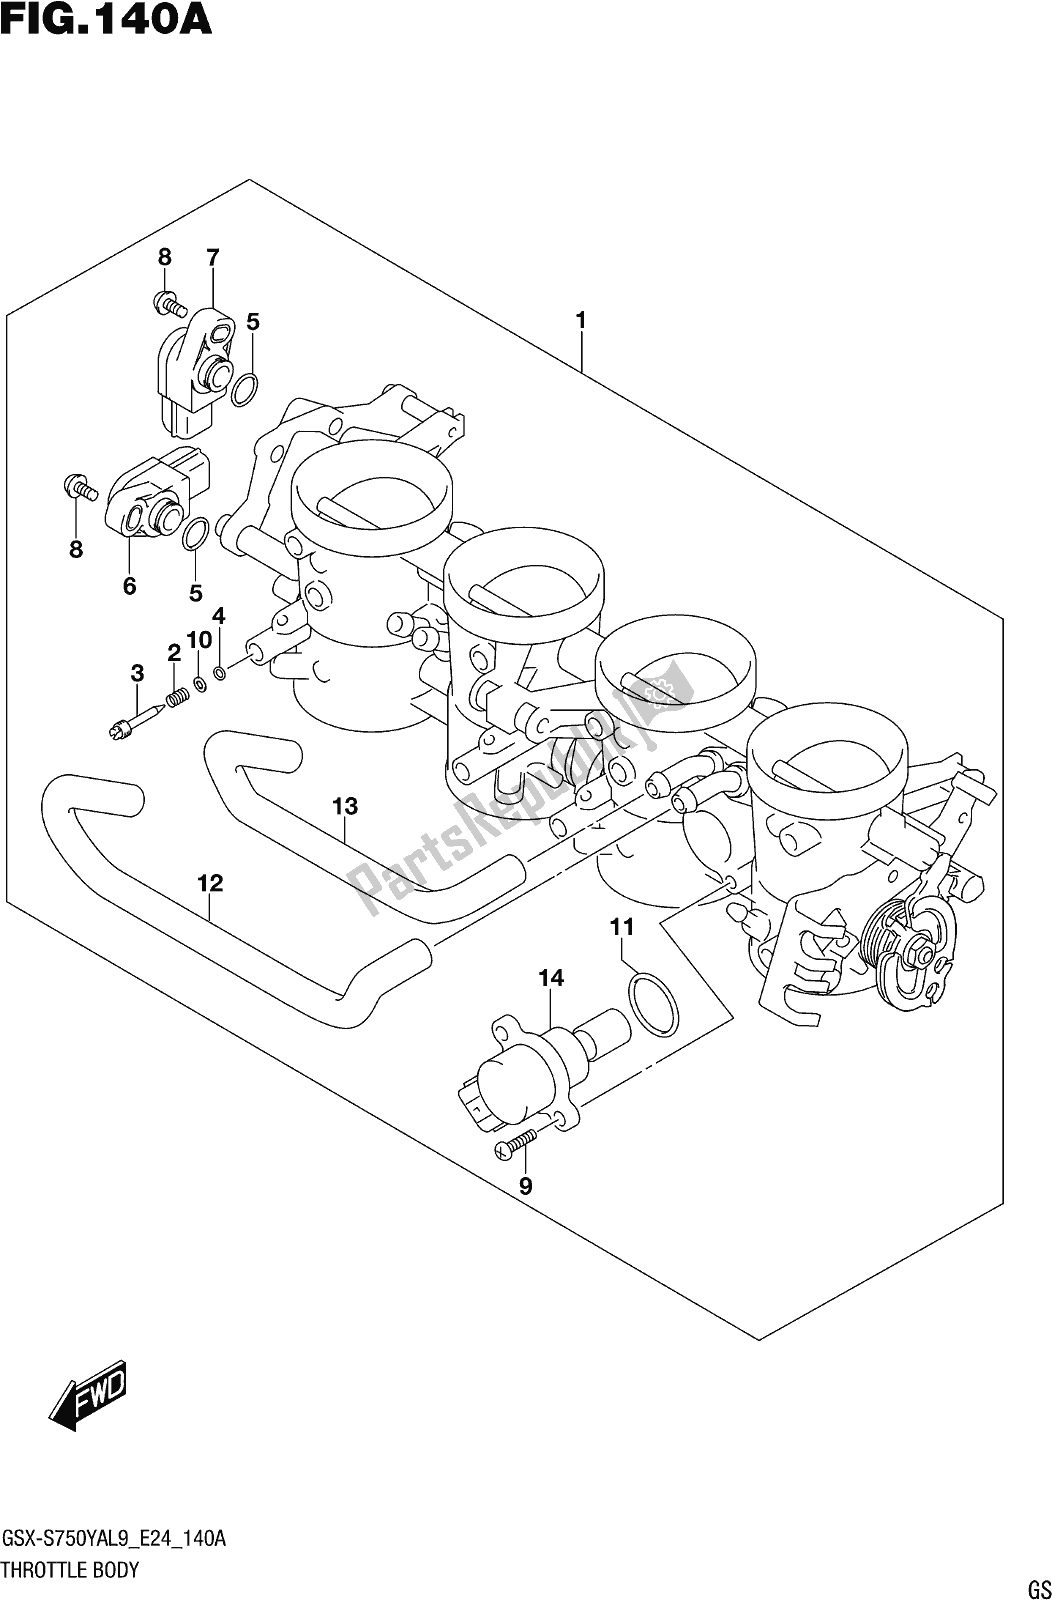 Toutes les pièces pour le Fig. 140a Throttle Body du Suzuki Gsx-s 750 ZA 2019